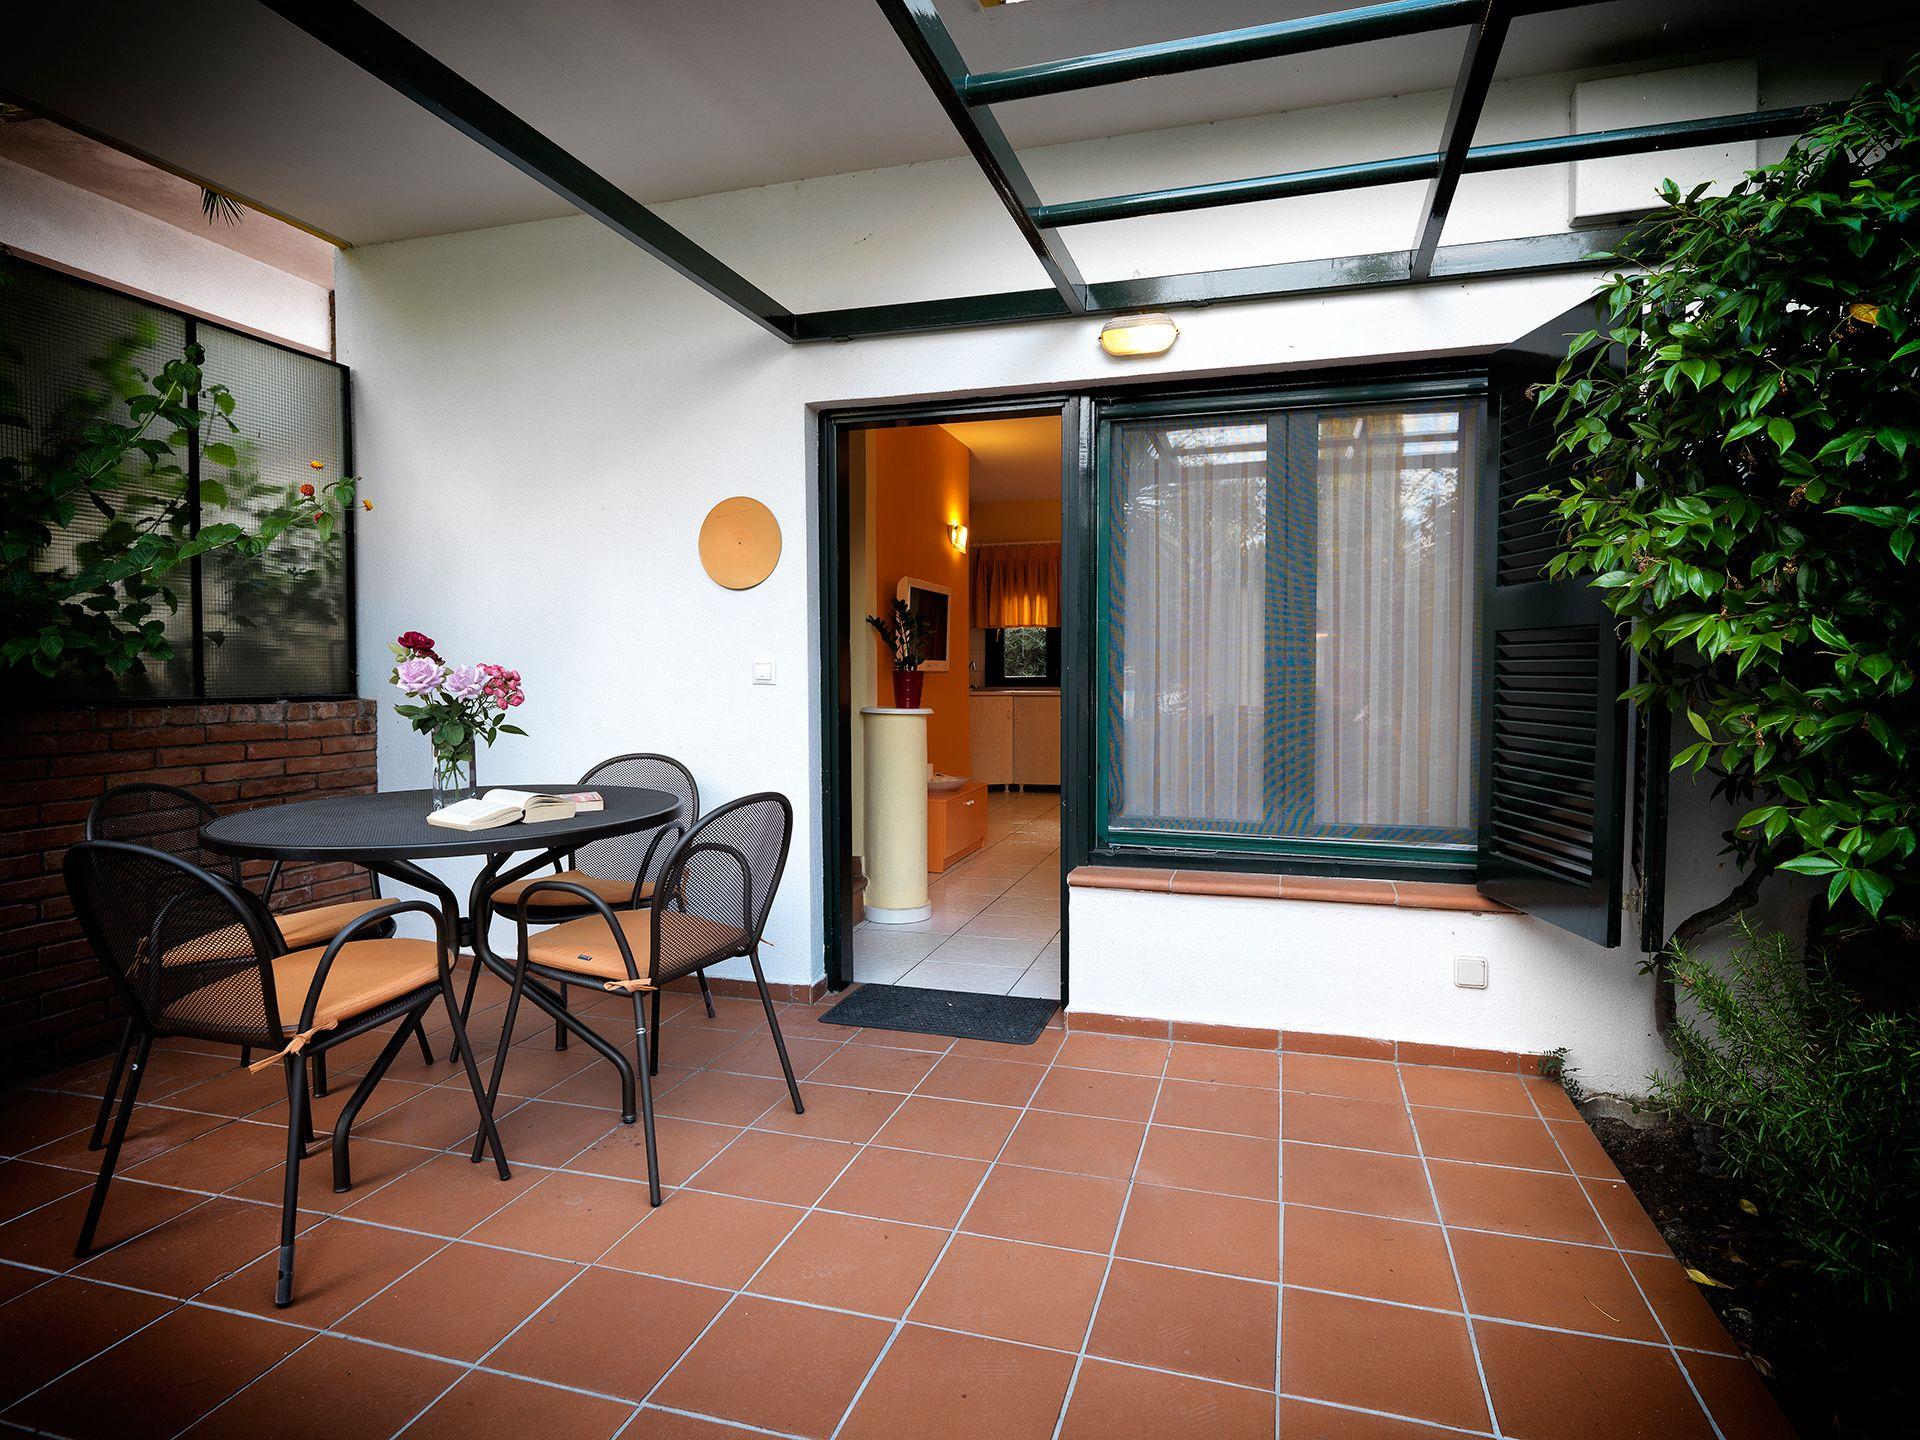 Wohnung in Afytos mit Garten, Terrasse und gemeins Ferienhaus in Europa